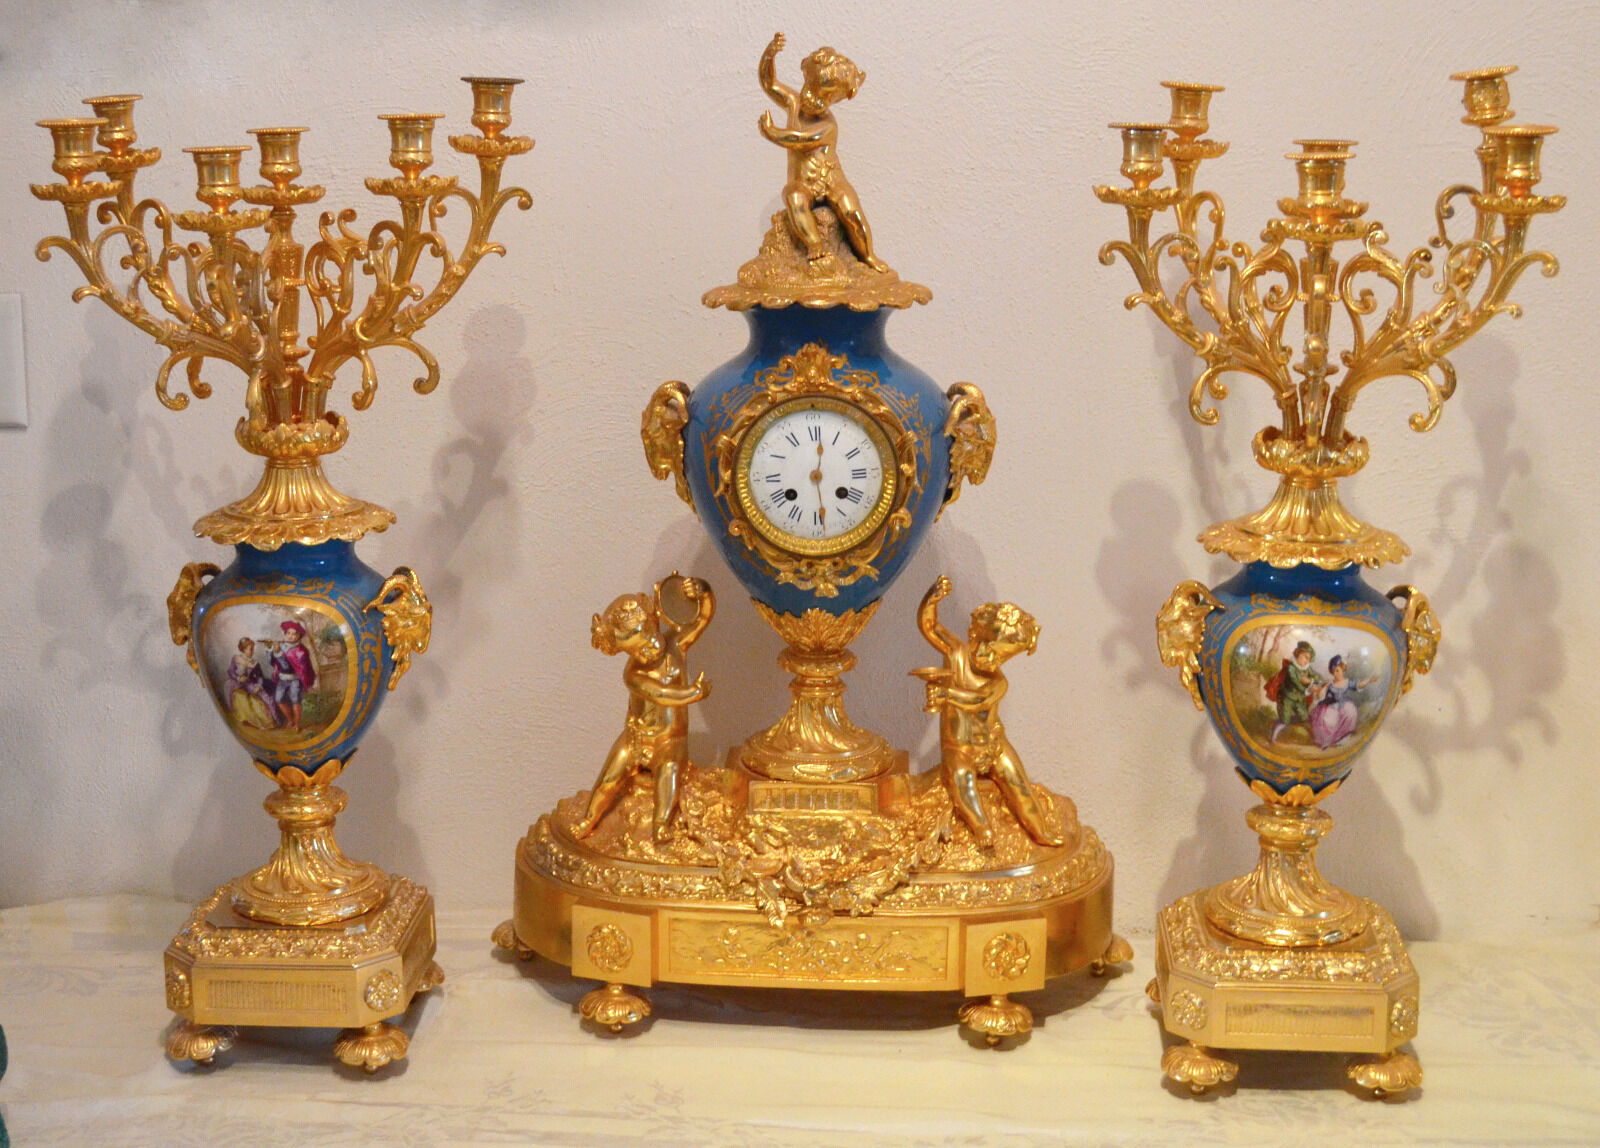 Sèvres porcelain clock and candleabras fantastic Royal set